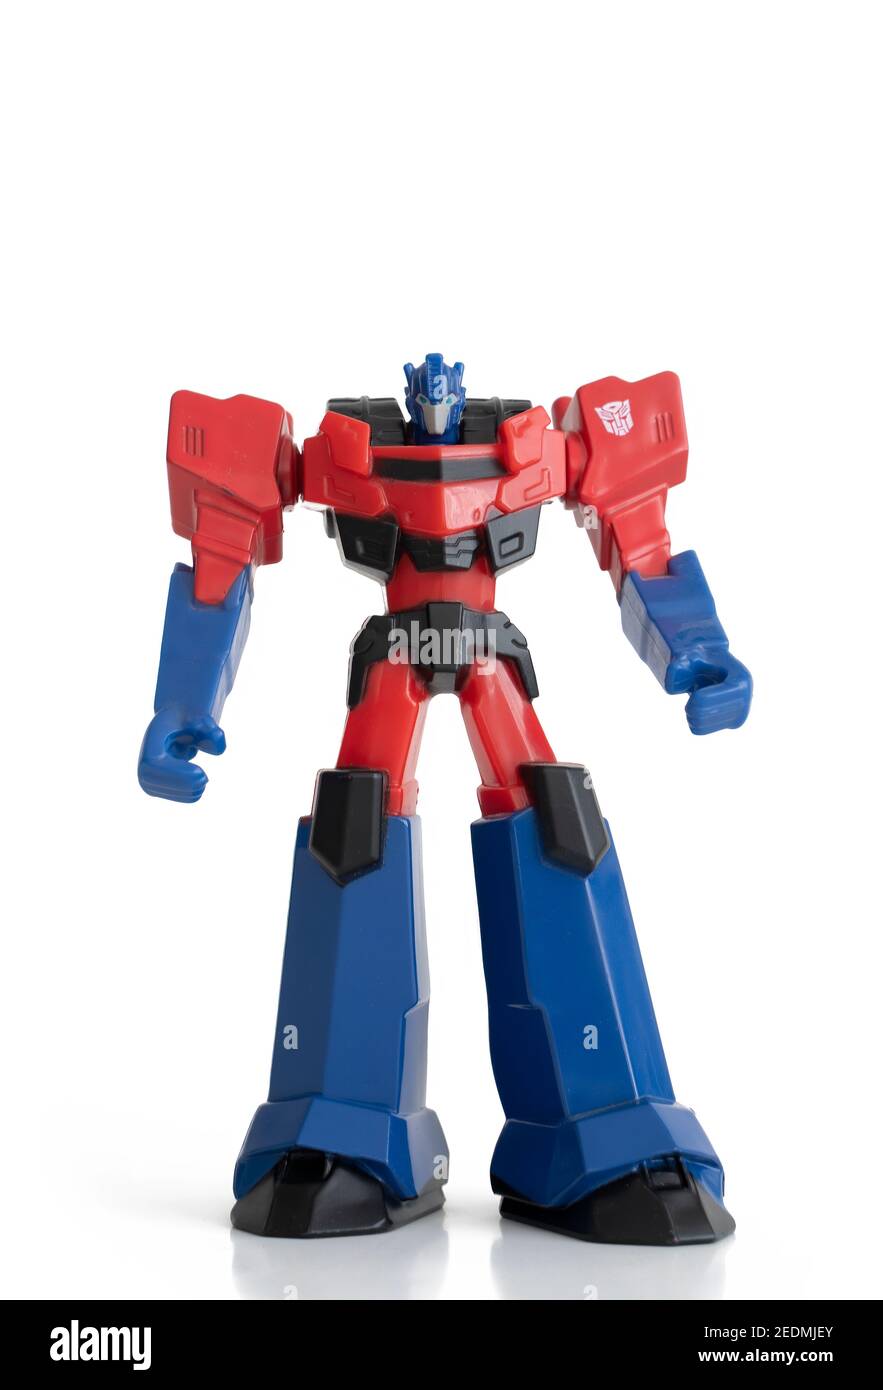 Transformers toy immagini e fotografie stock ad alta risoluzione - Alamy